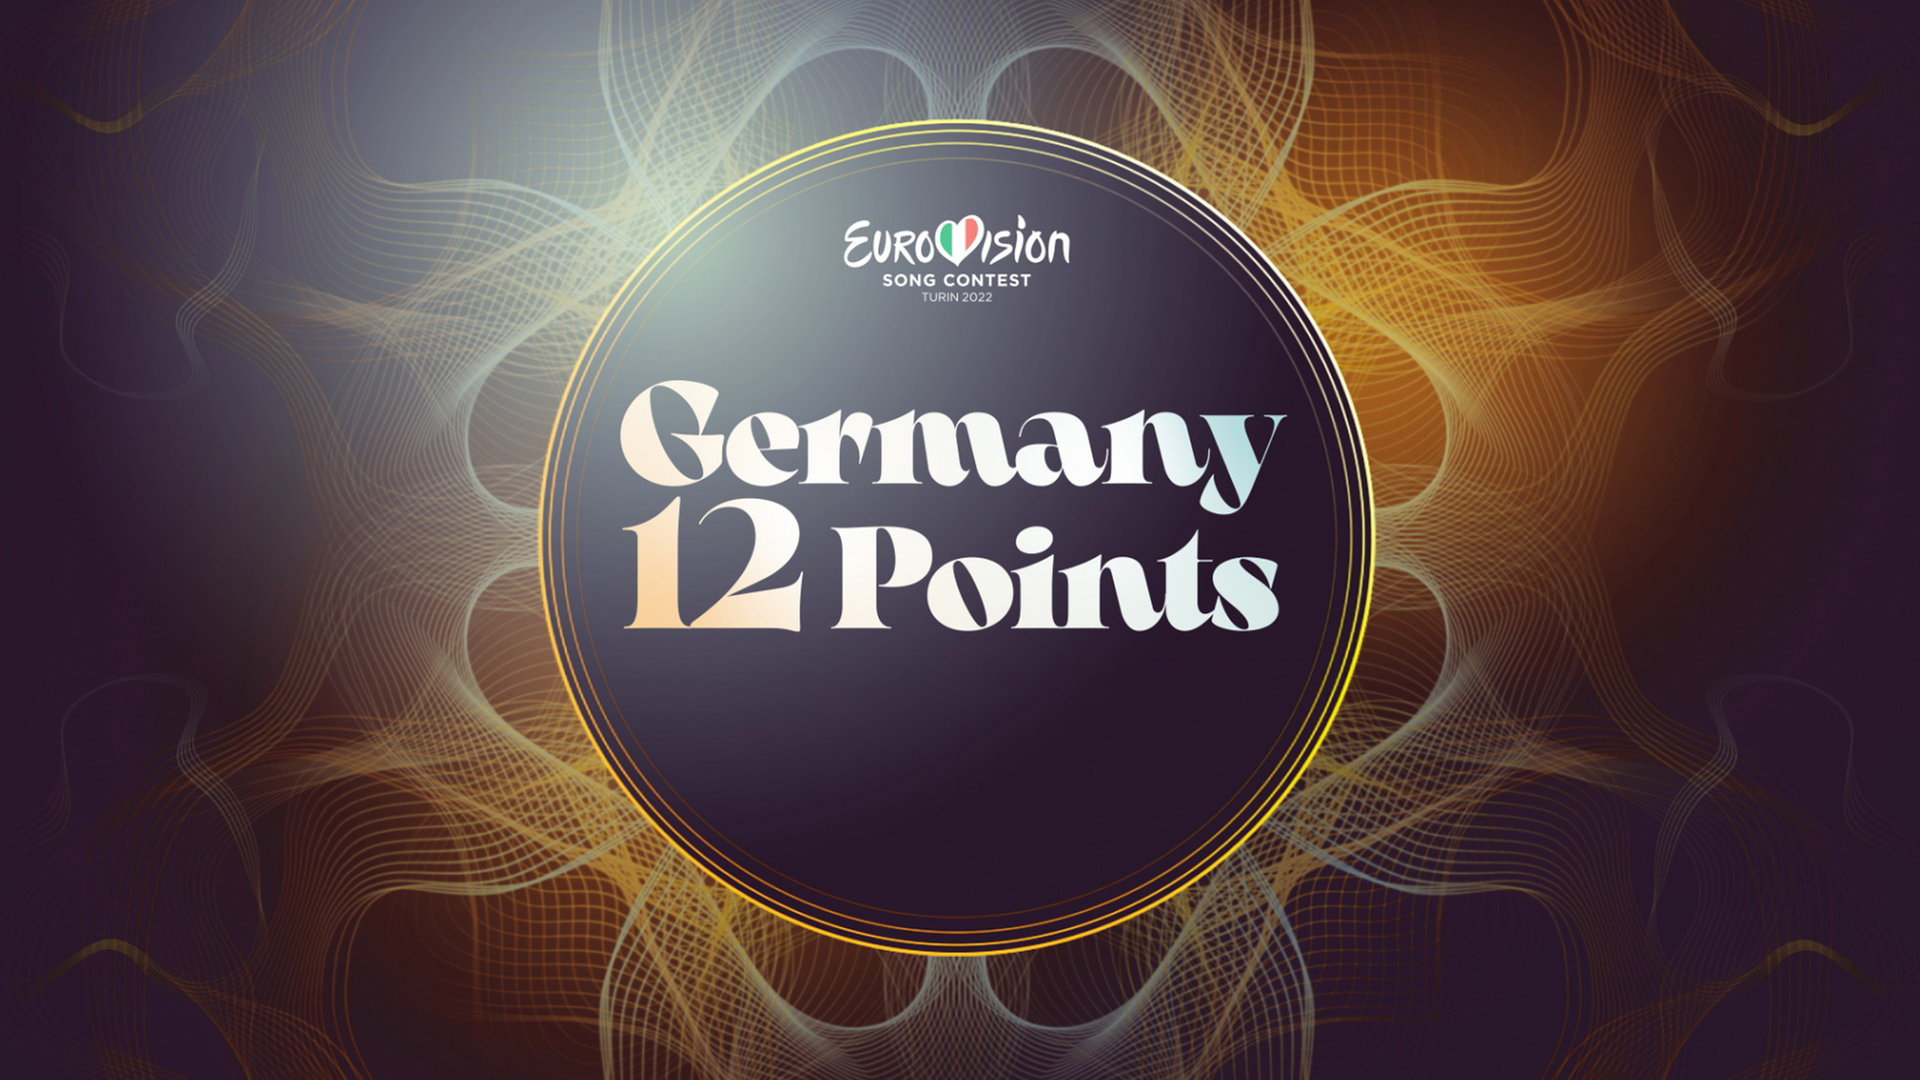 Germany 12 points estrena esta noche su gran final